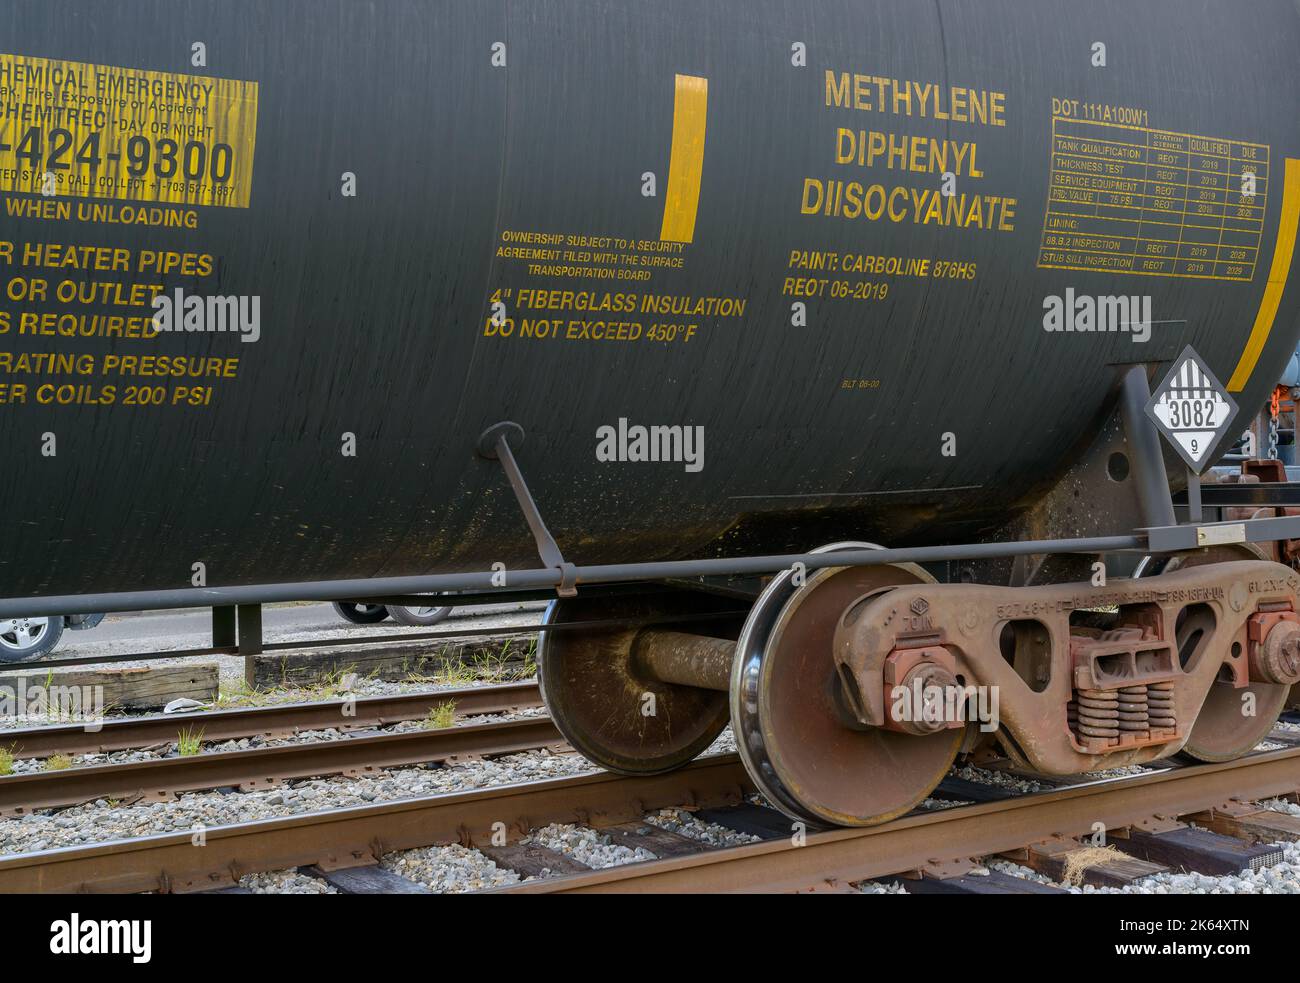 NEW ORLEANS, LA, États-Unis - 17 SEPTEMBRE 2022 : carte de réservoir de chemin de fer affichant une étiquette de matières dangereuses et portant le diisocyanate de méthylène diphényle Banque D'Images